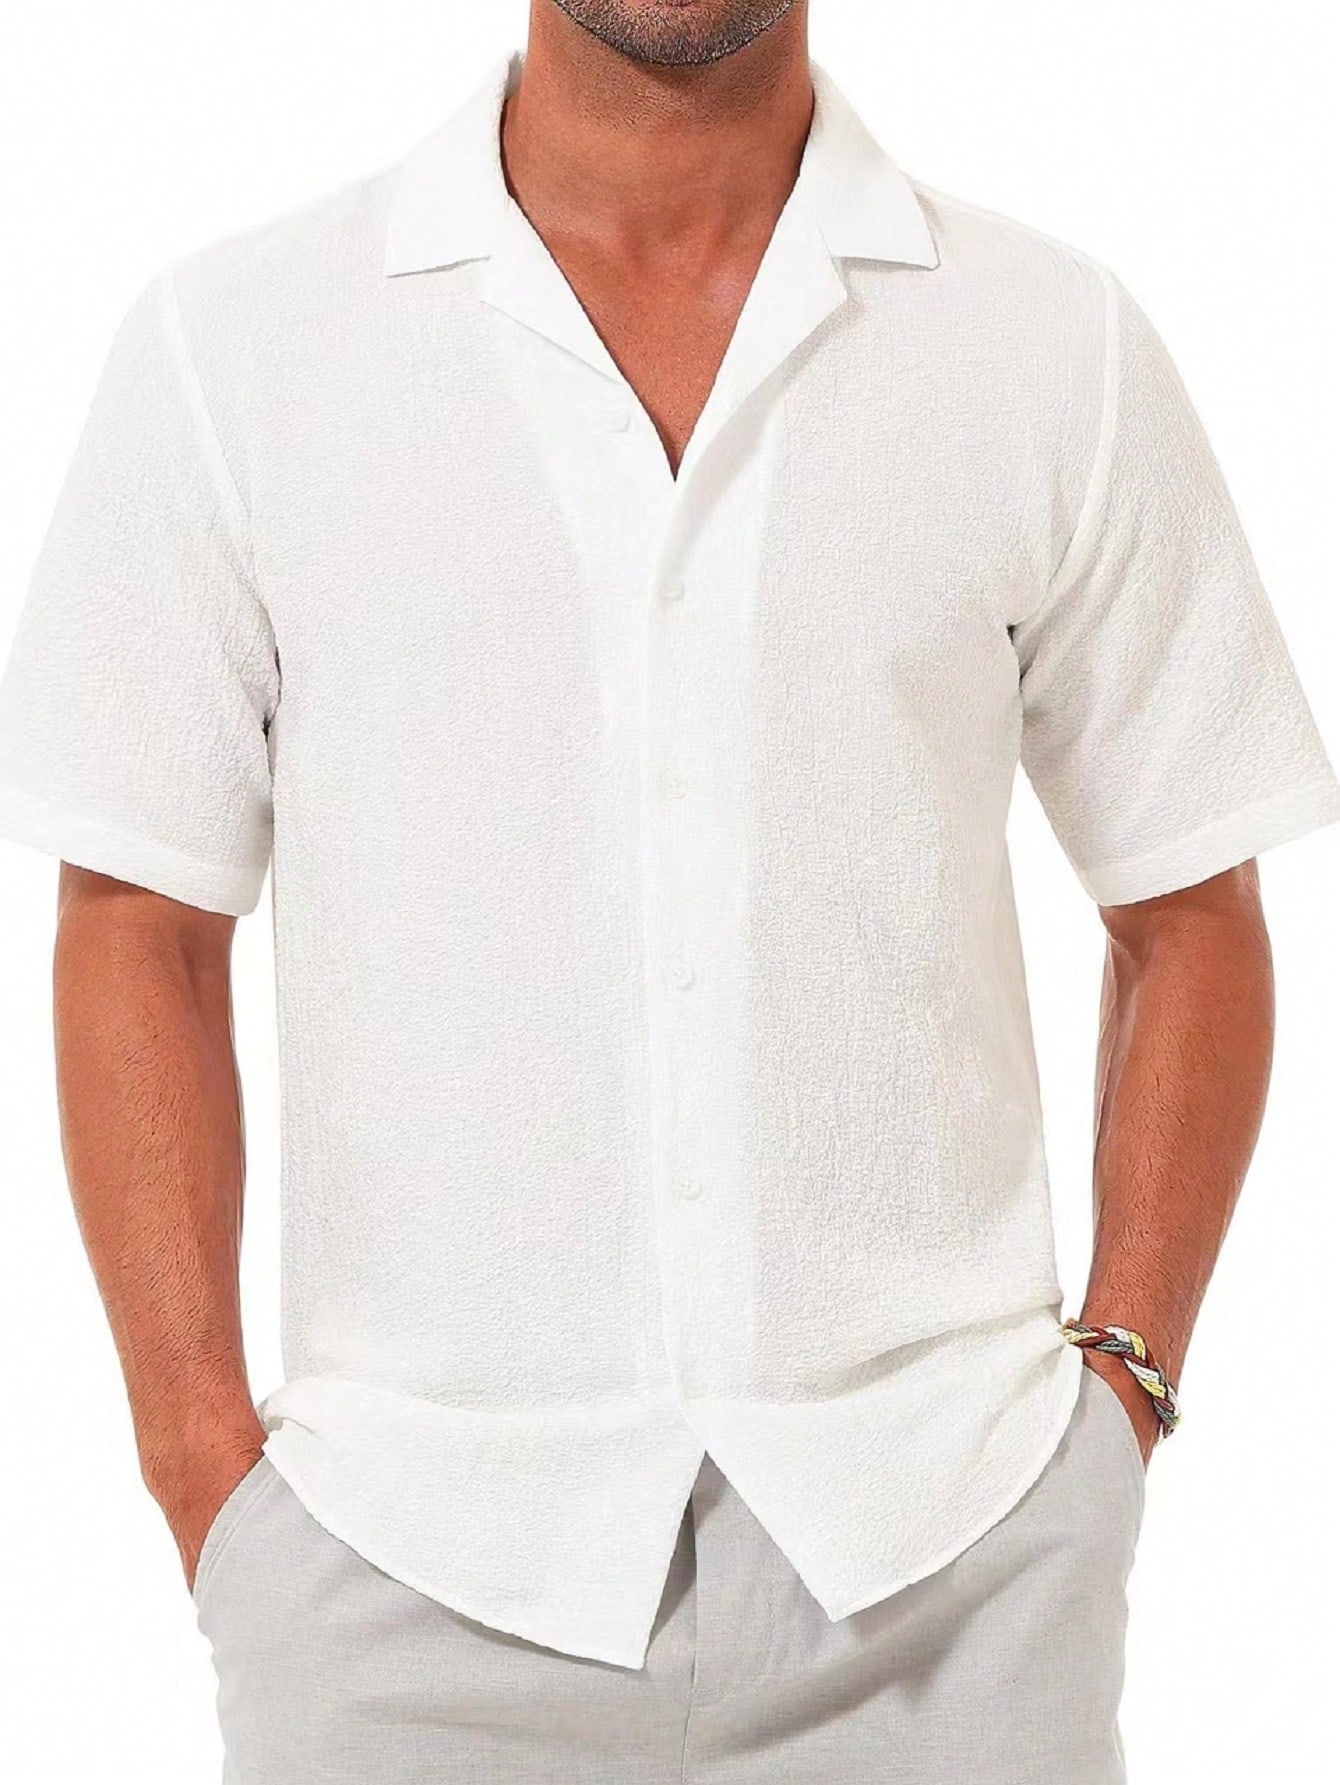 Мужская повседневная рубашка с коротким рукавом на пуговицах, белый